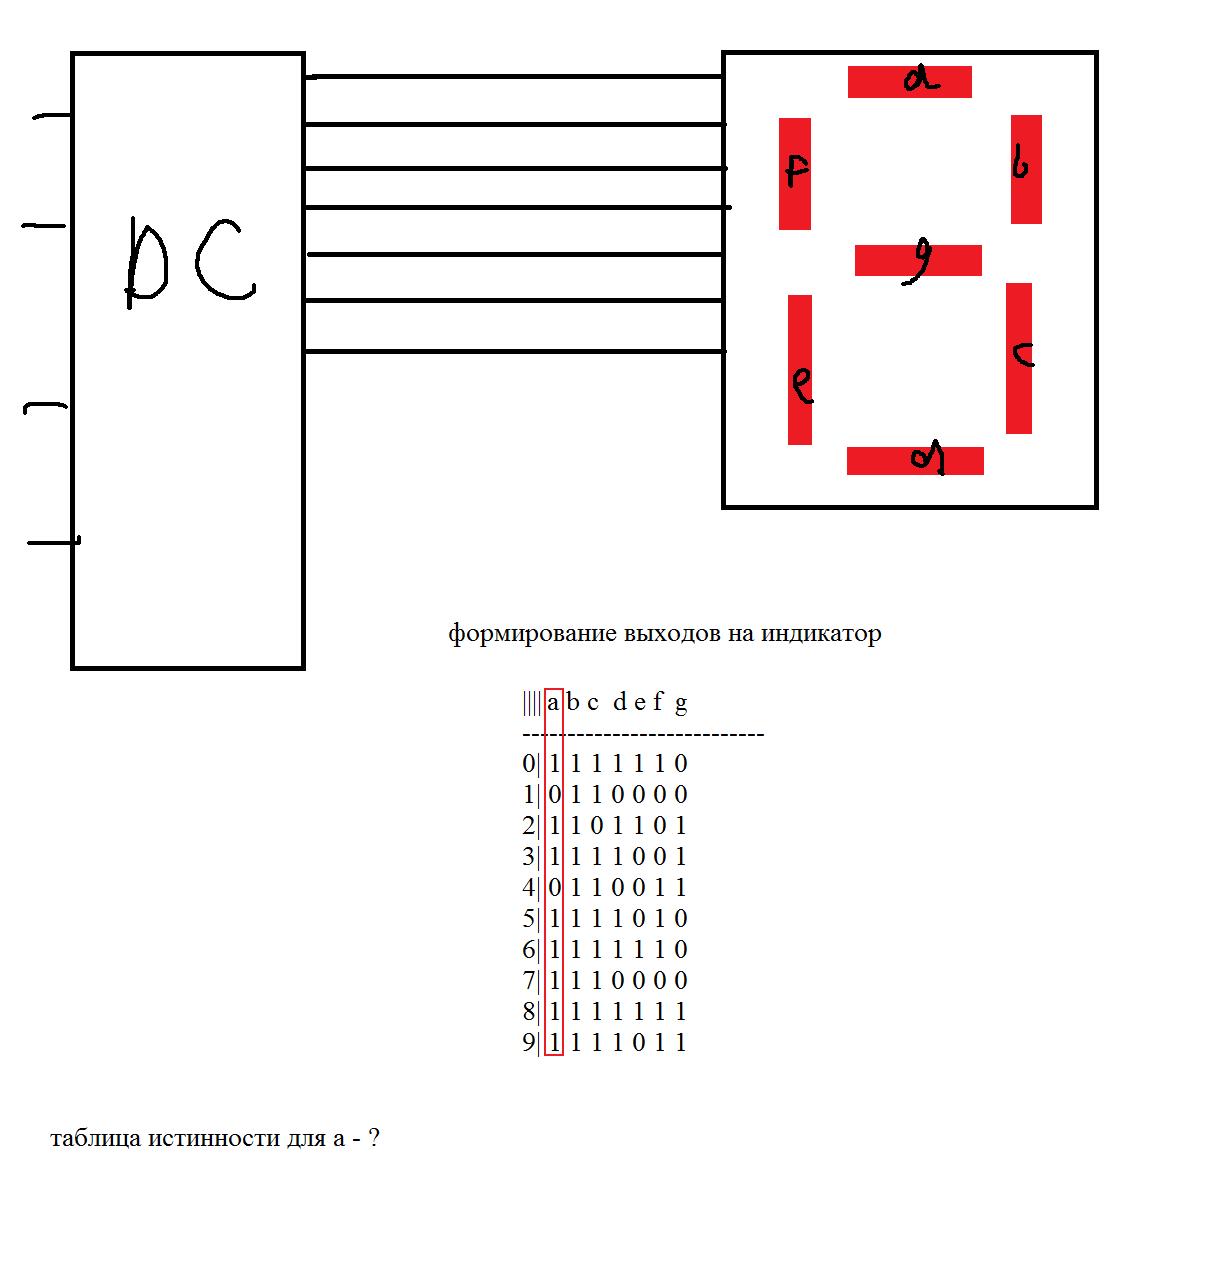 Выходы дешифратора. Семисегментный ЖКИ схема таблица истинности. Дешифратор на транзисторах схема.